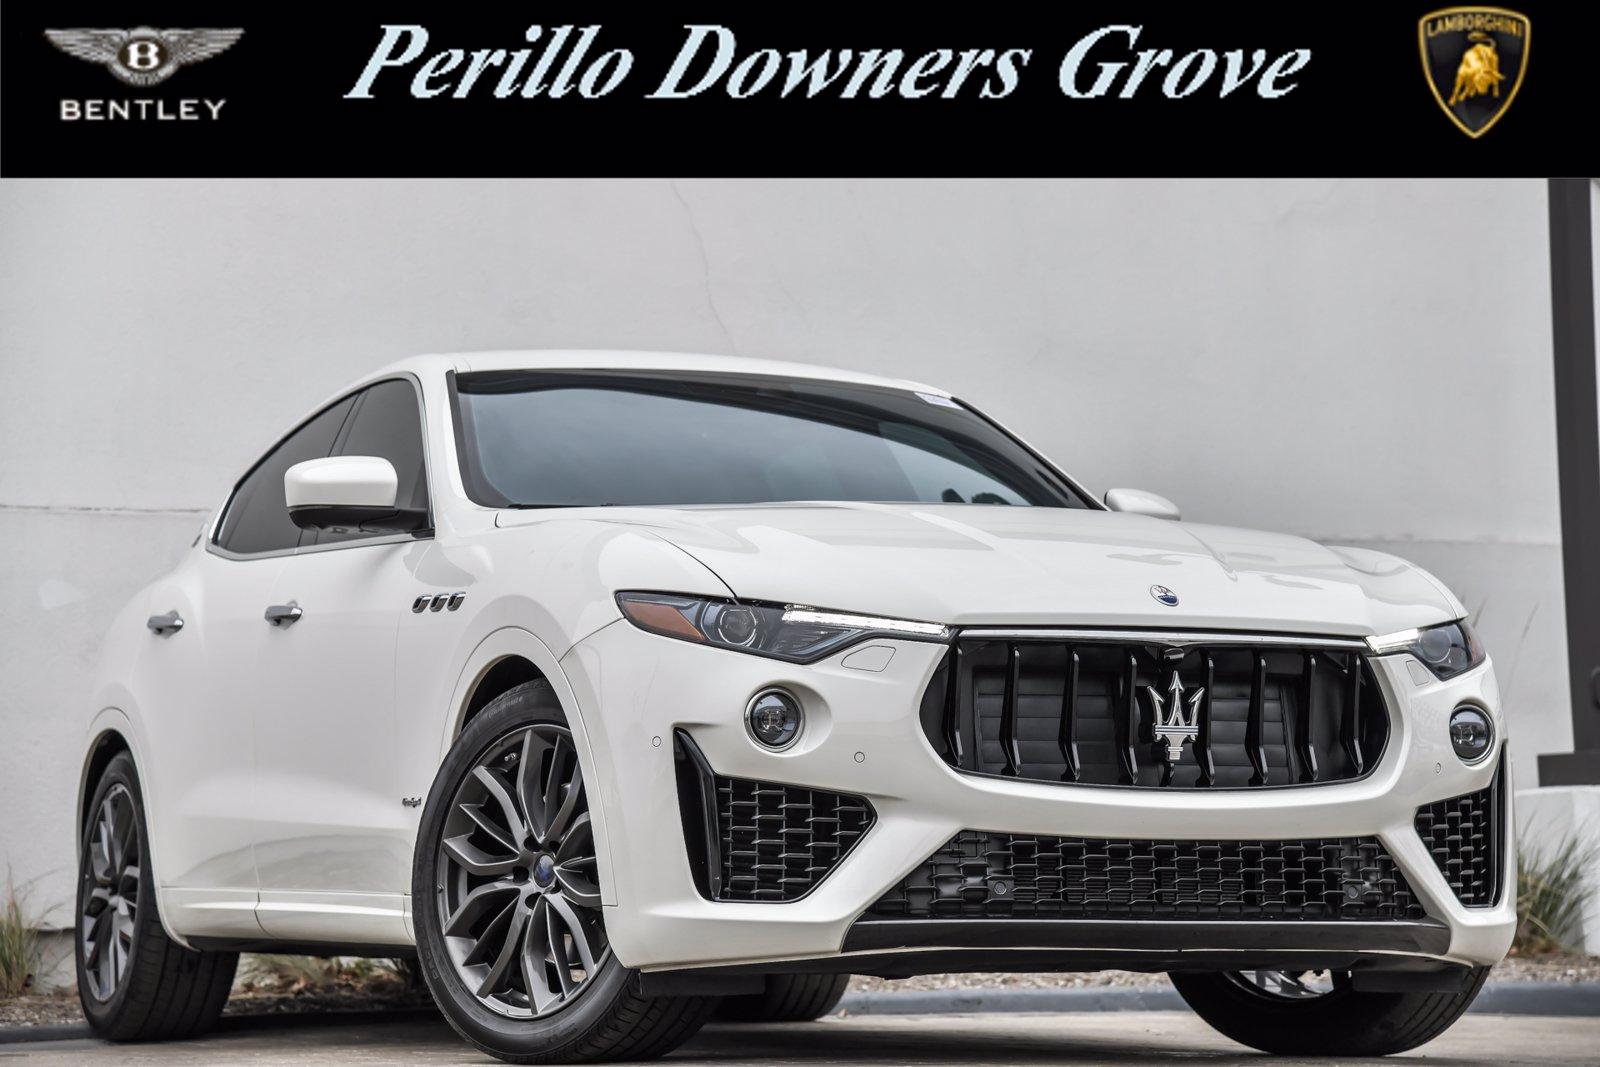 Used 2019 Maserati Levante GranSport | Downers Grove, IL